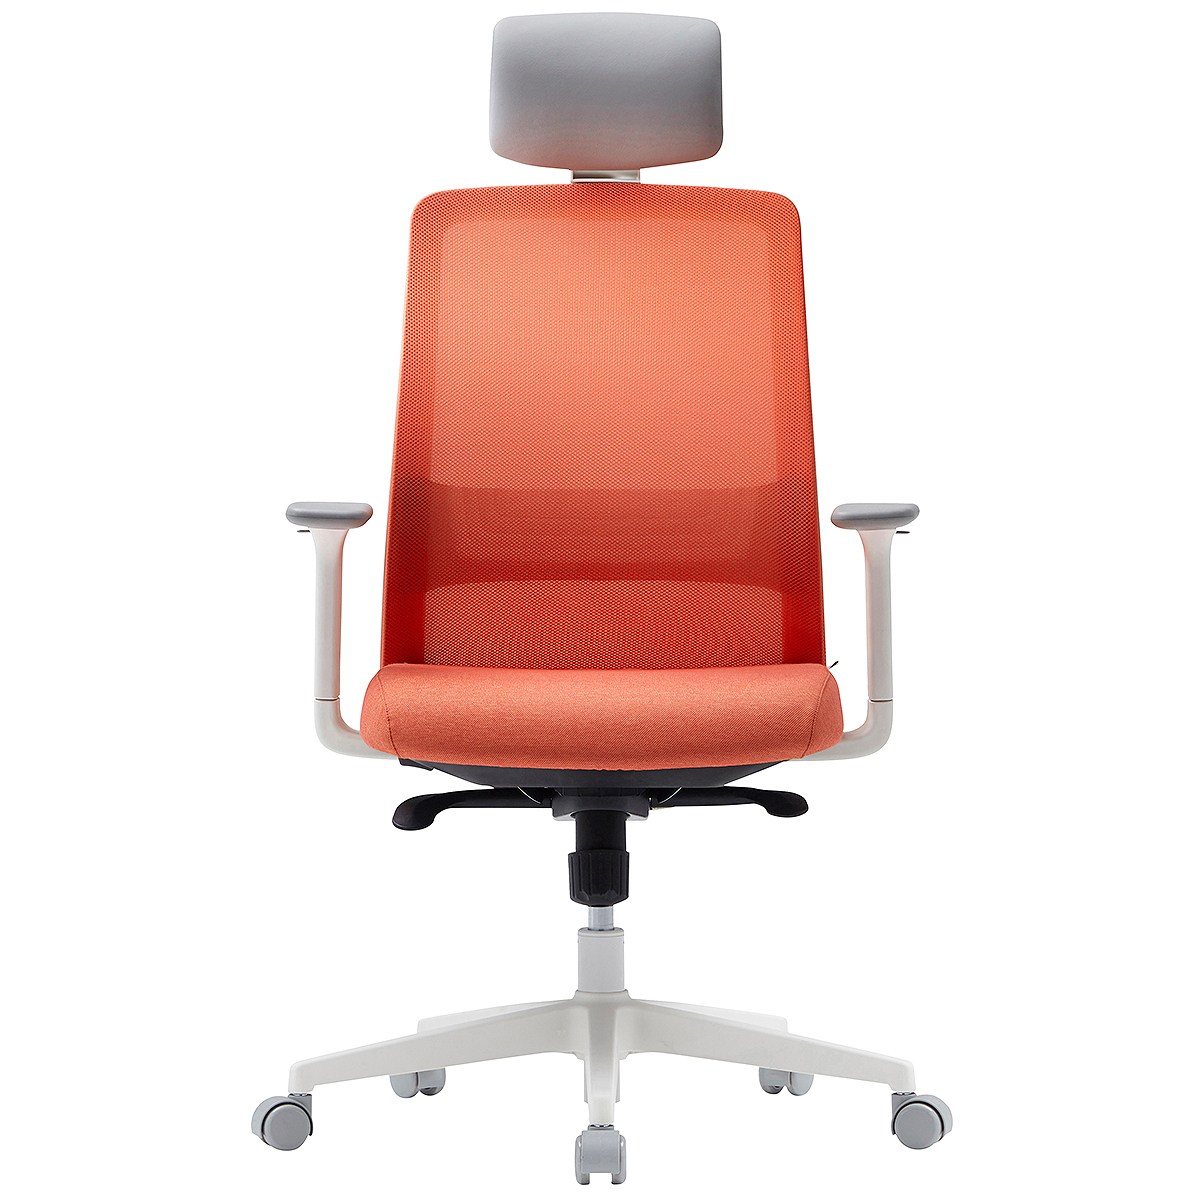 시디즈 화이트쉘 메쉬 사무용 의자 TN402HLA Sidiz White Shell Mesh Office Chair, 오렌지 